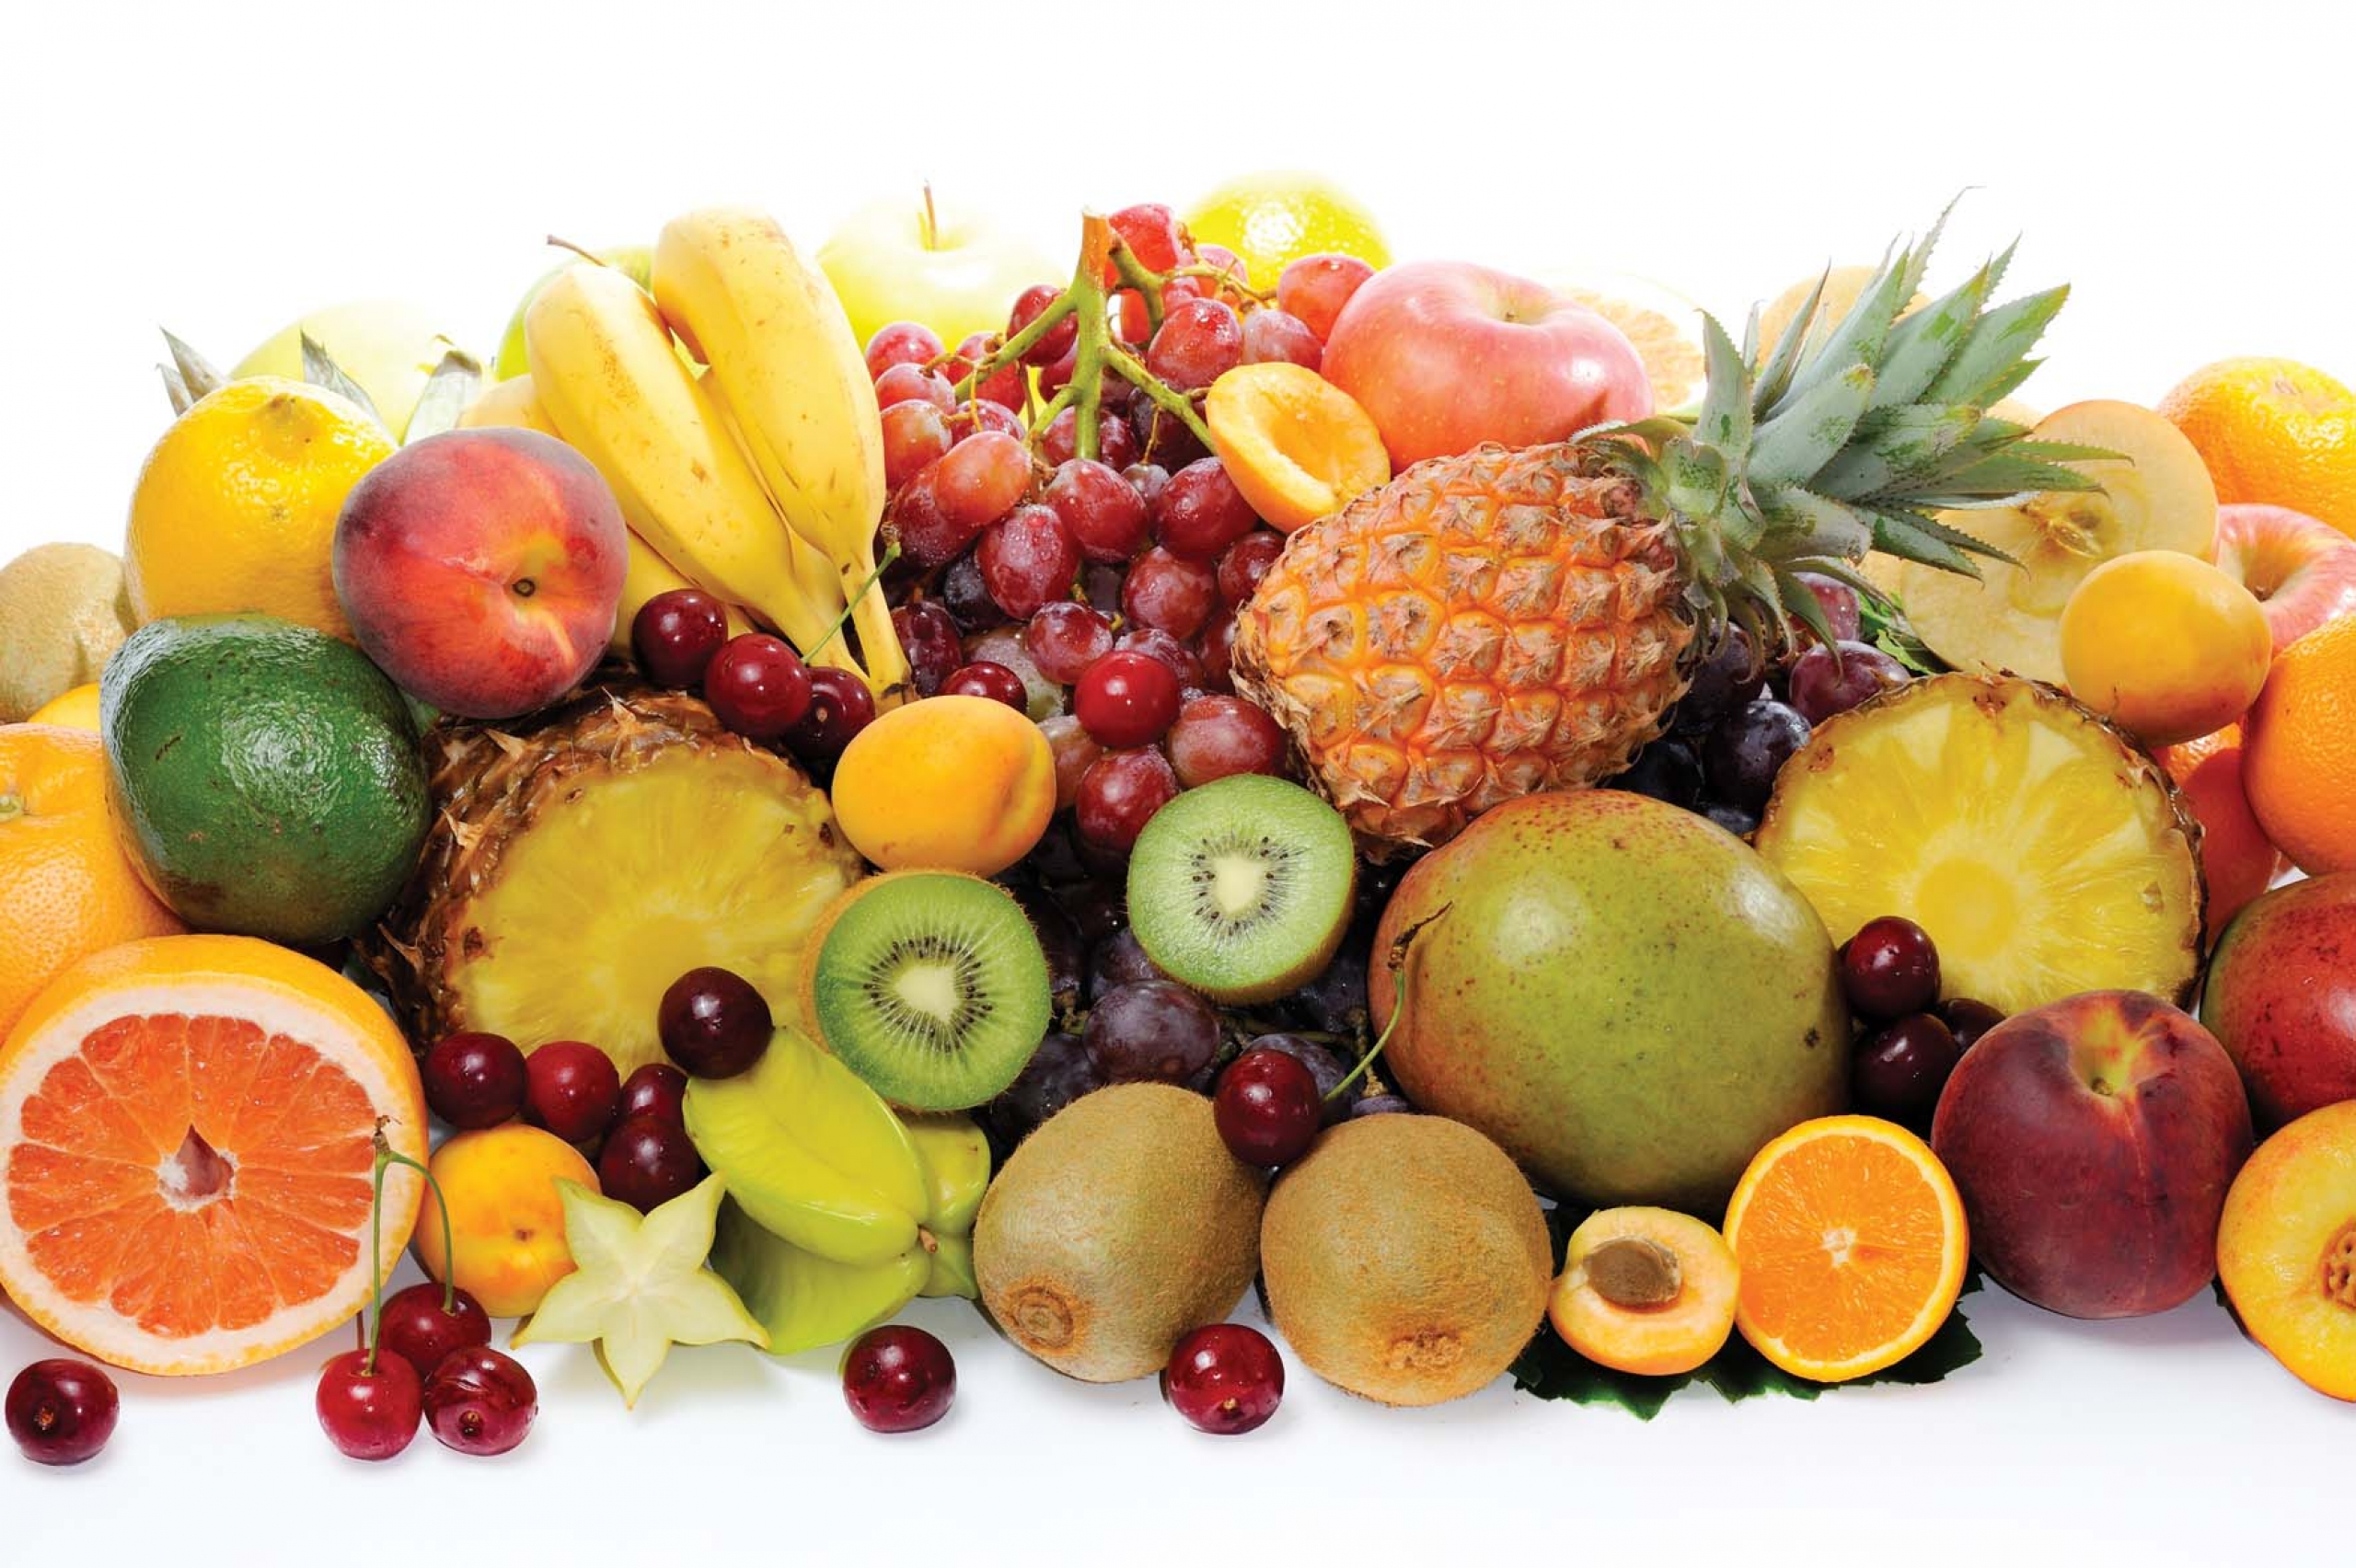 Какова польза от «зимних» фруктов?